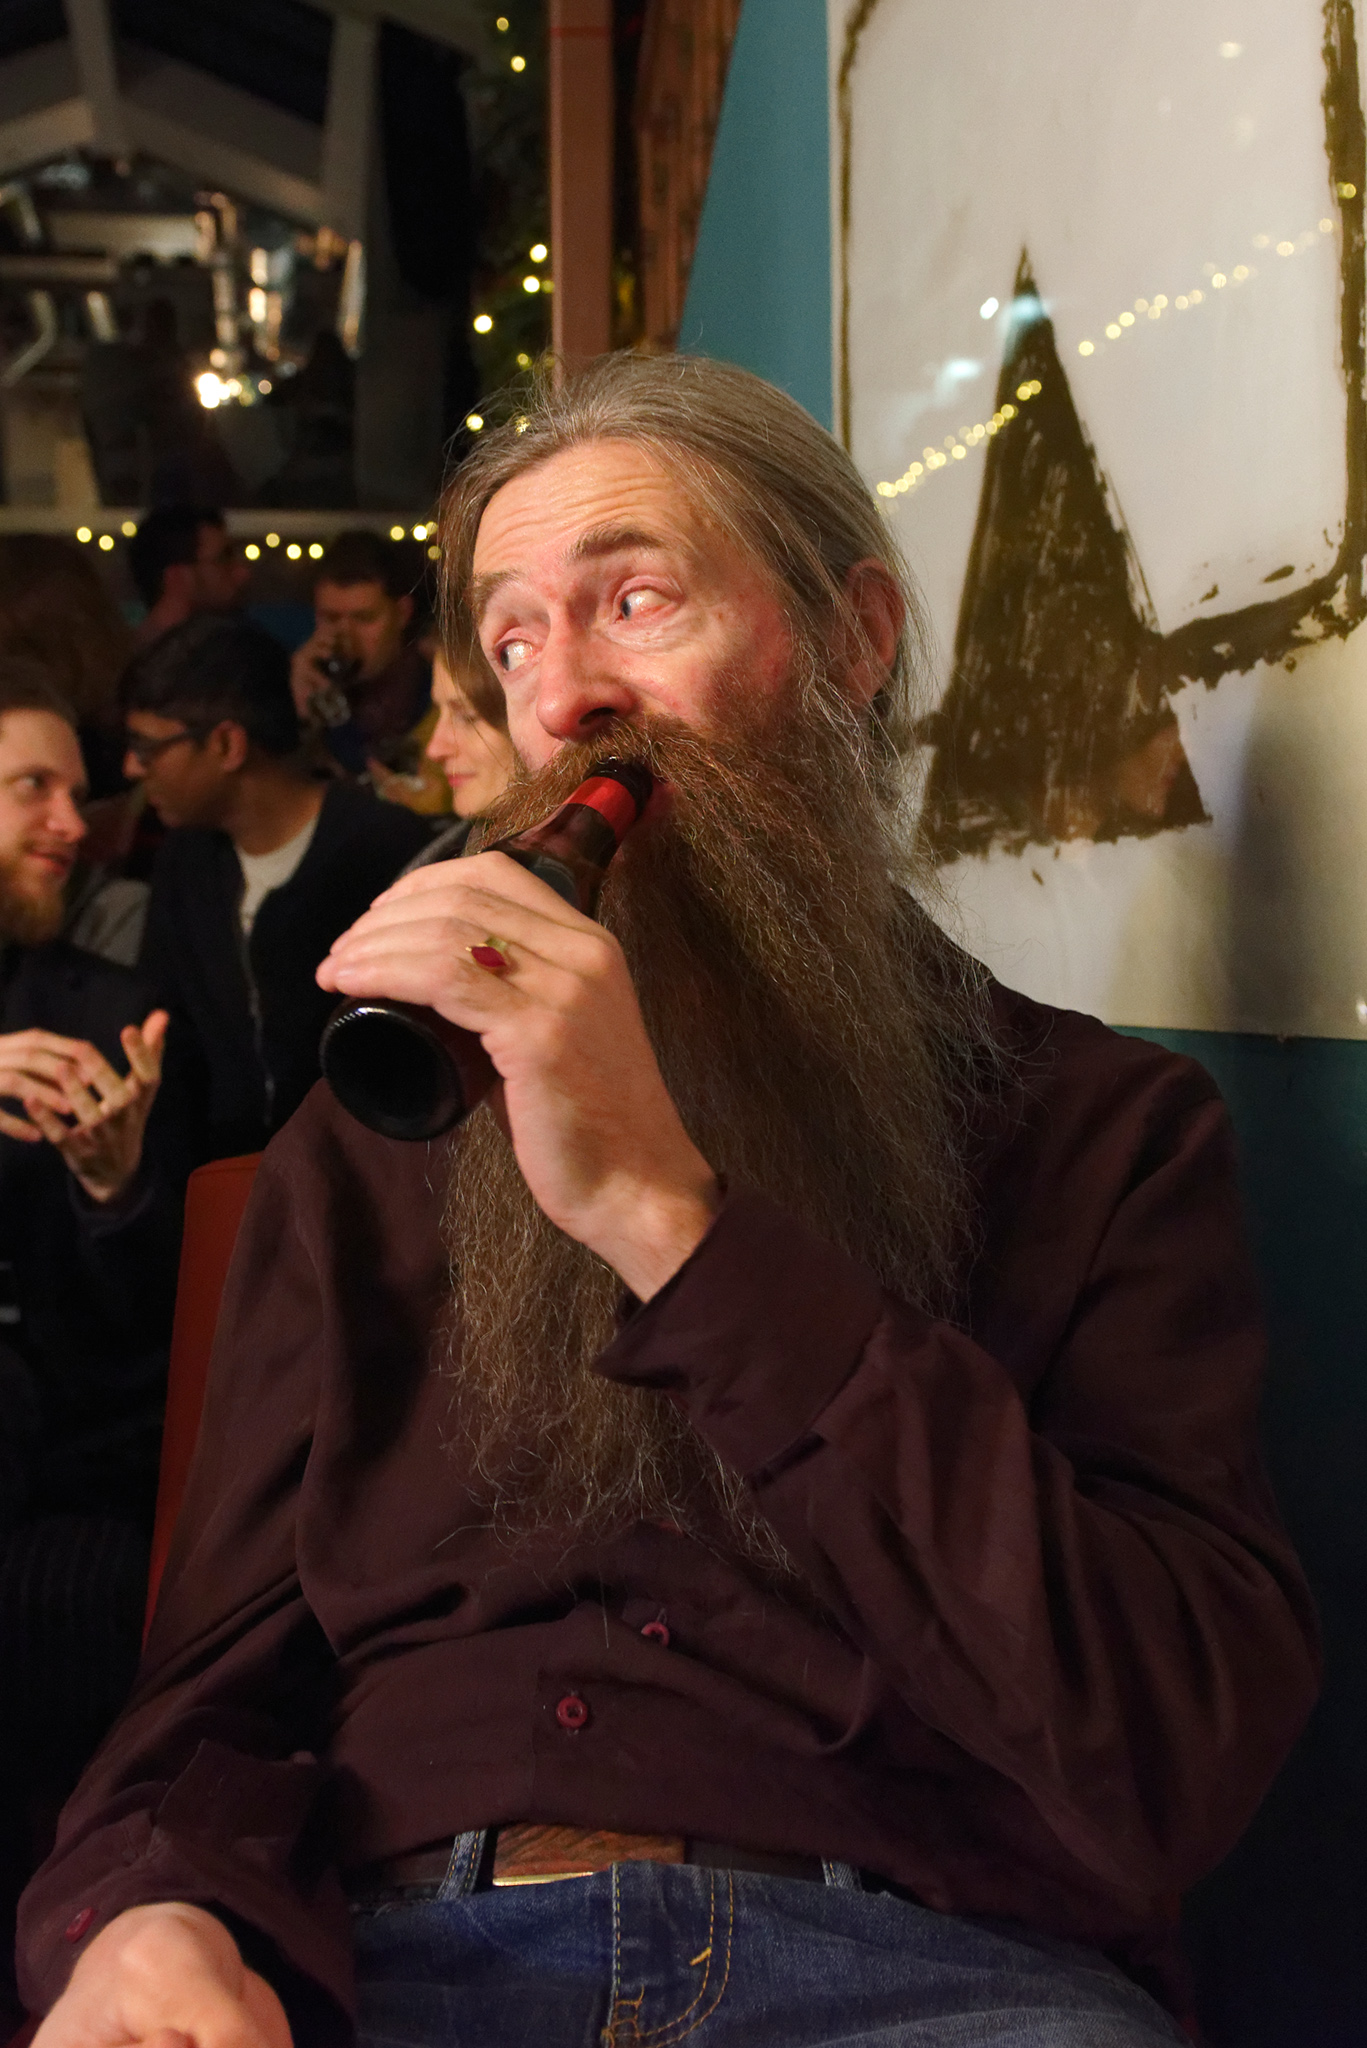 Aubrey de Grey, November, 2017